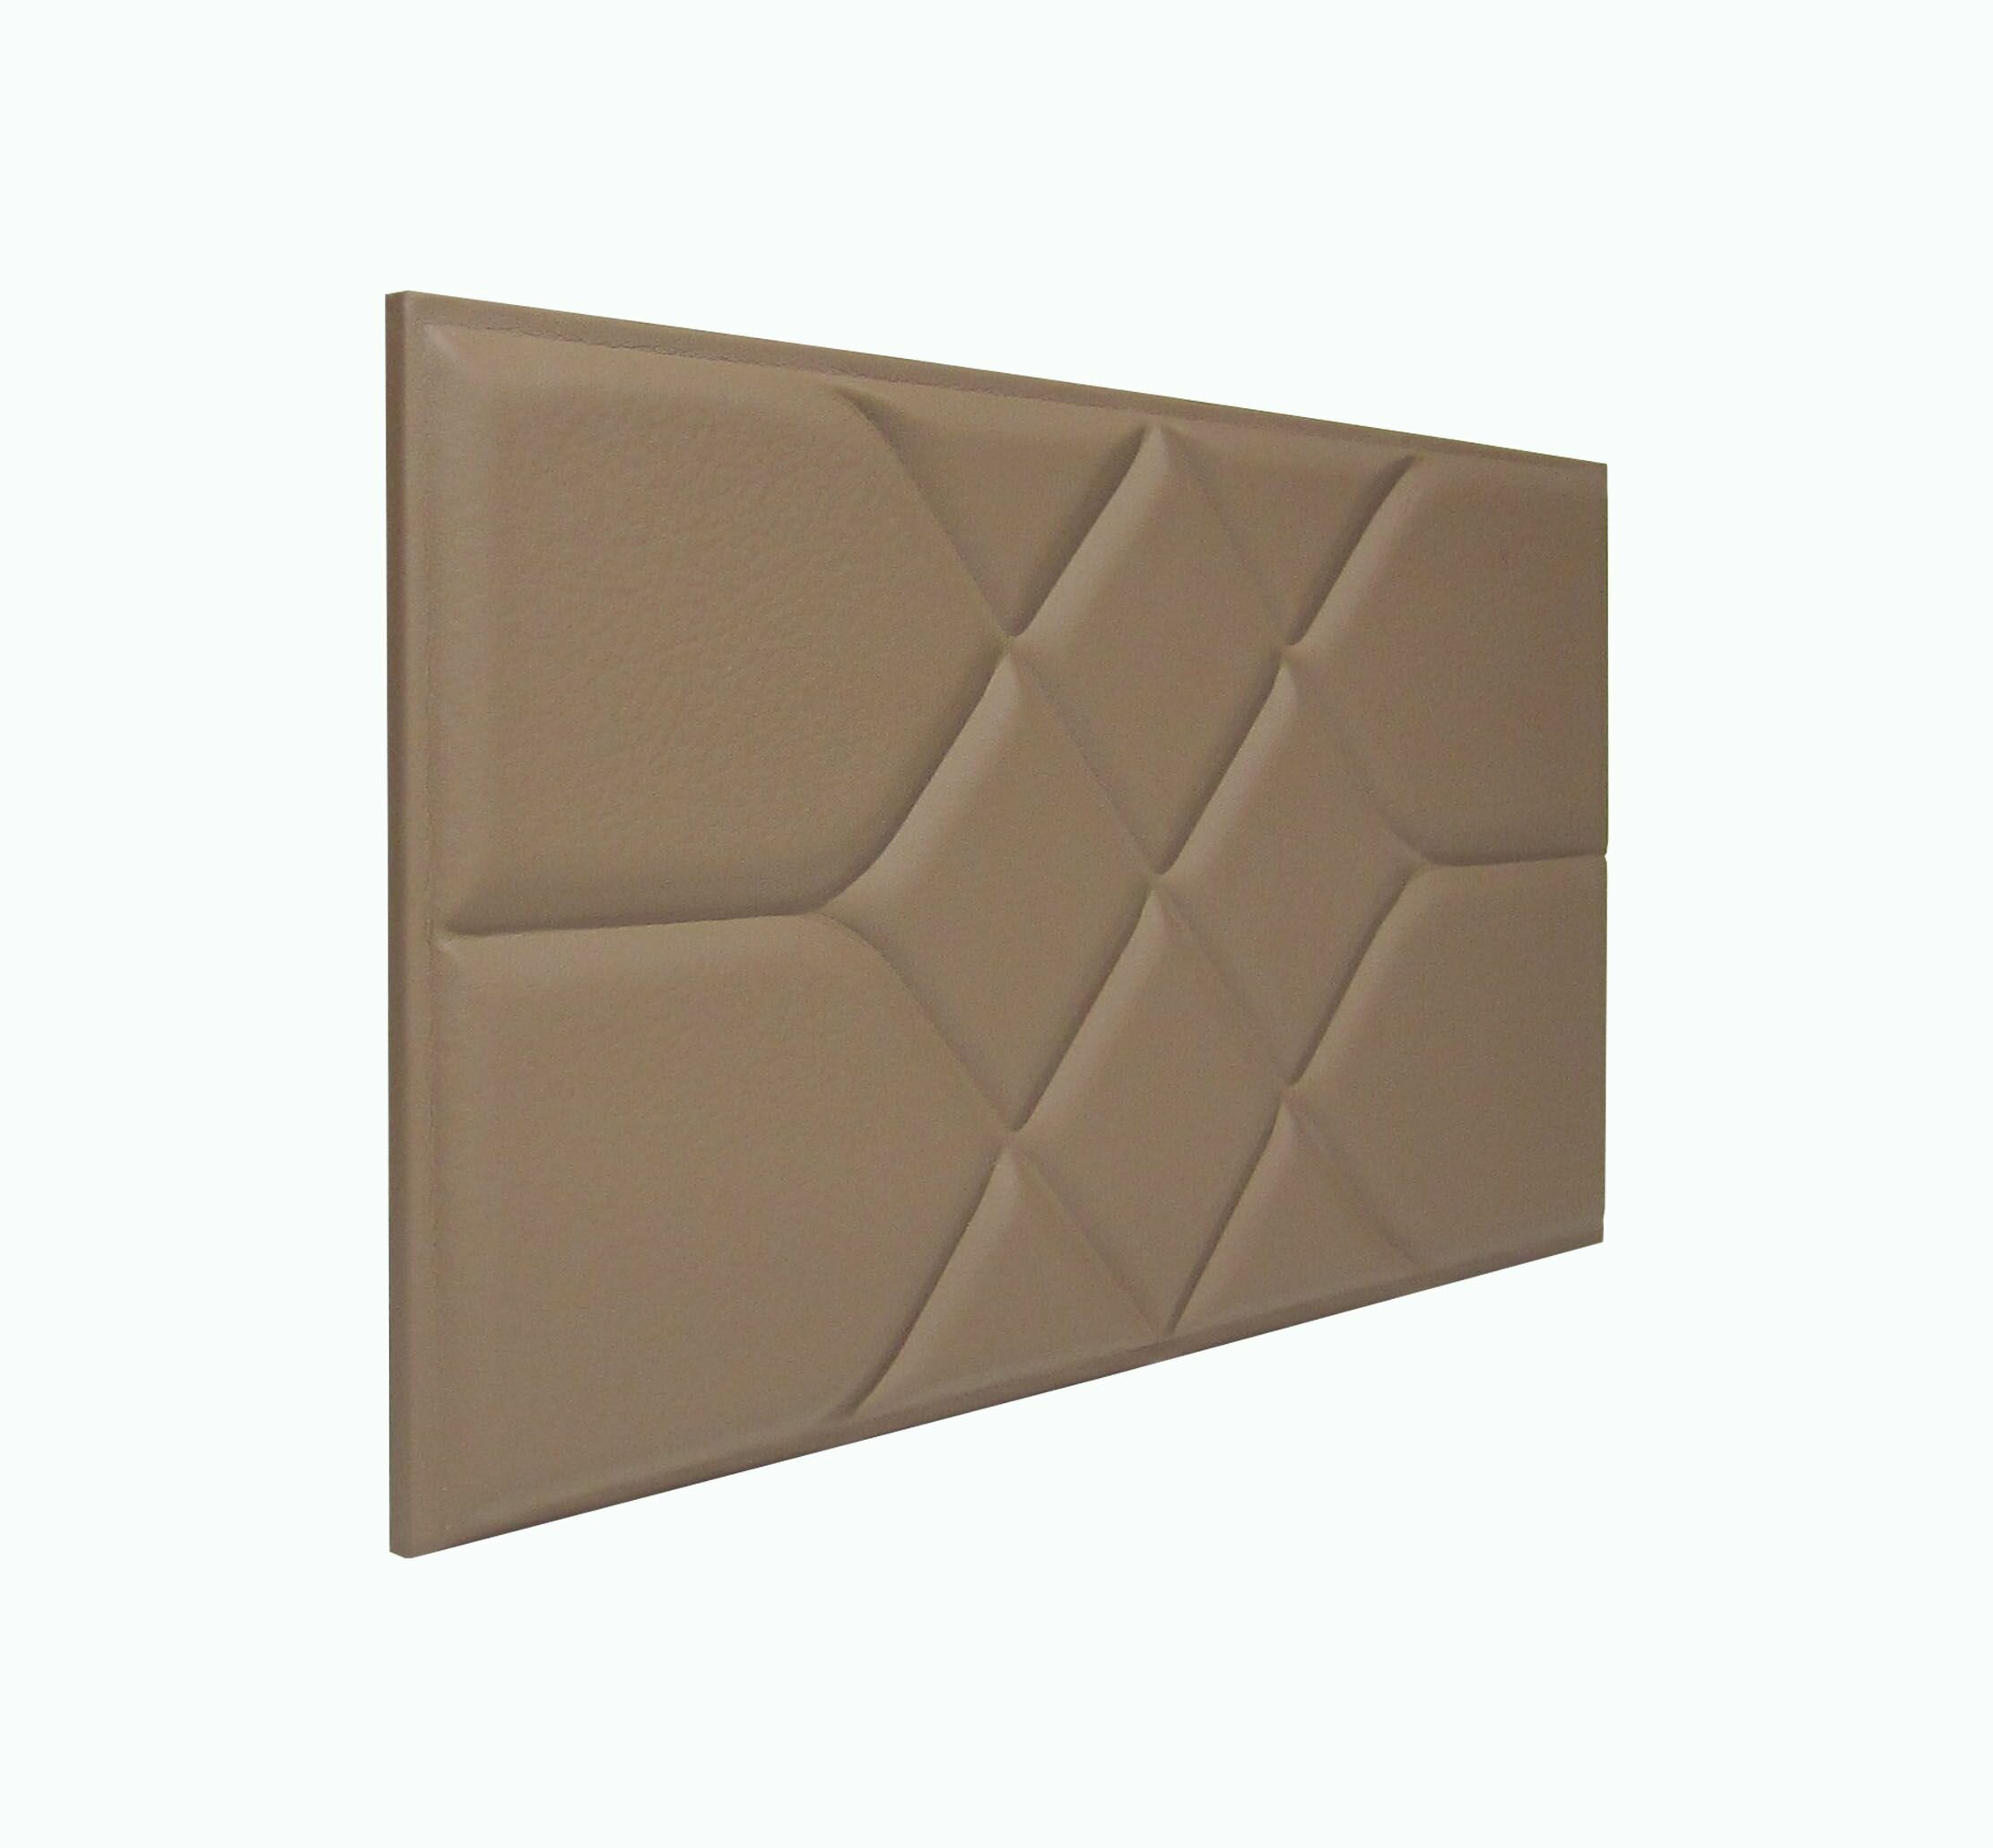 Панель стеновая мягкая из экокожи Coffee Road коричневый кофейный 30 * 60см 1шт мягкая 3D панель декор для стен и в изголовье кровати